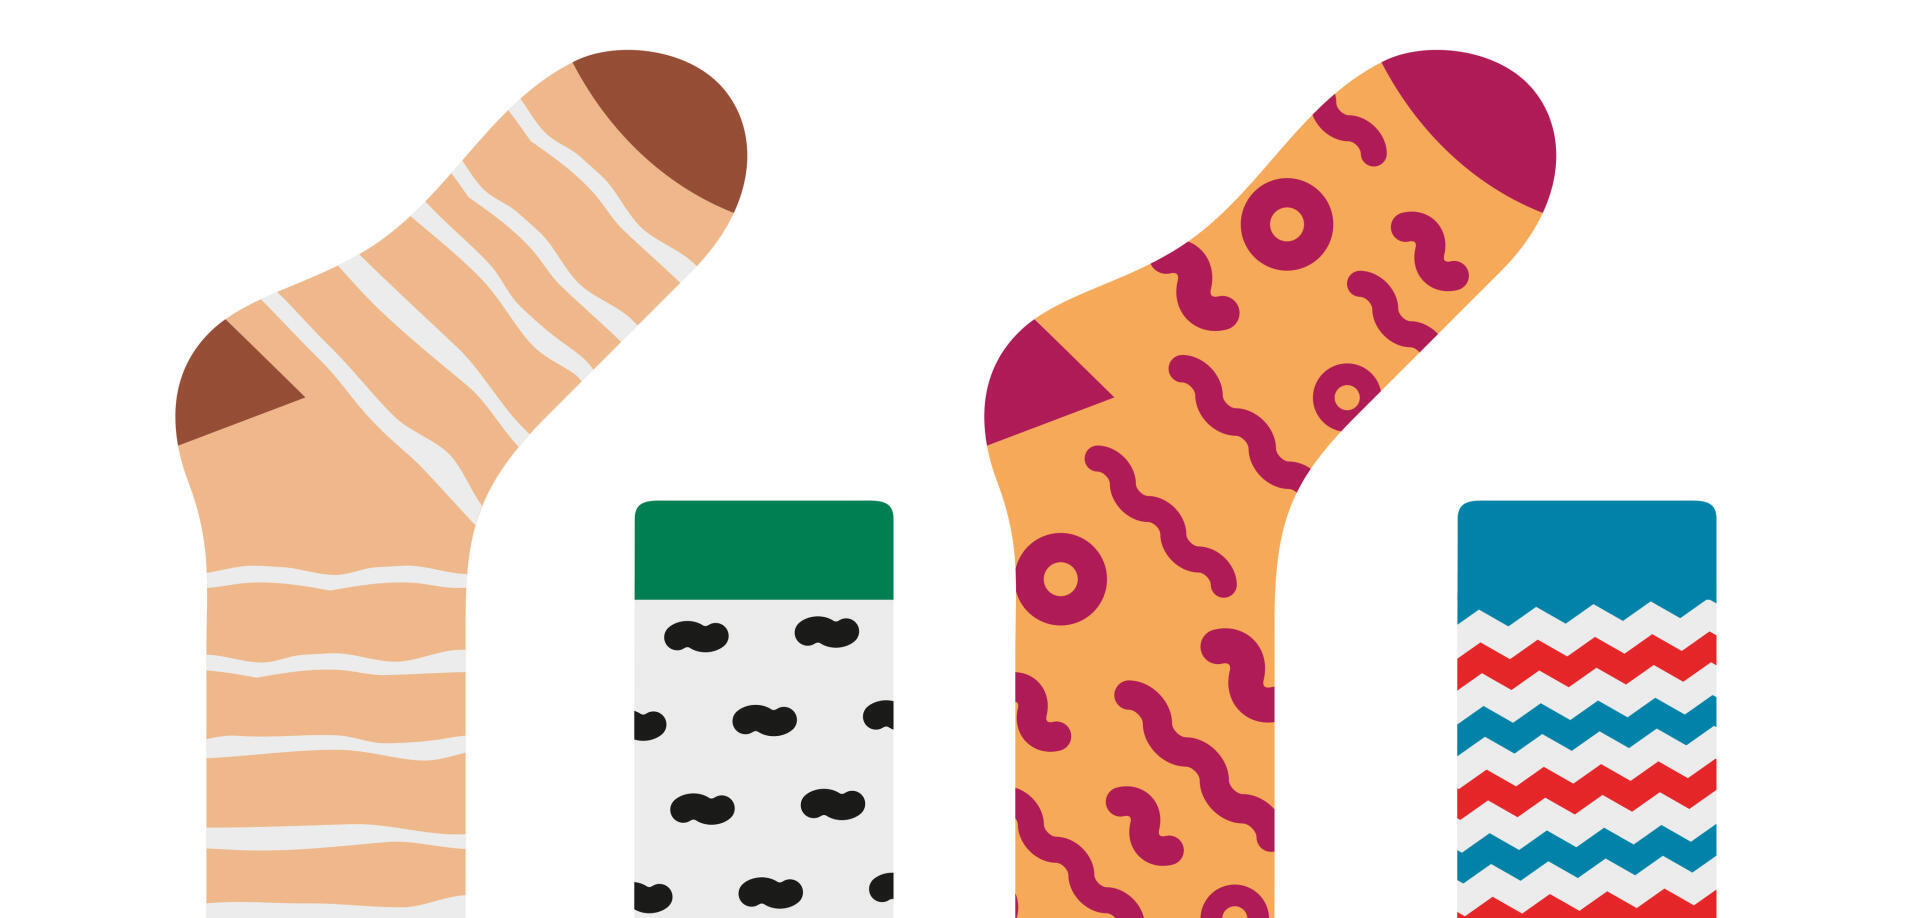 Illustration of socks